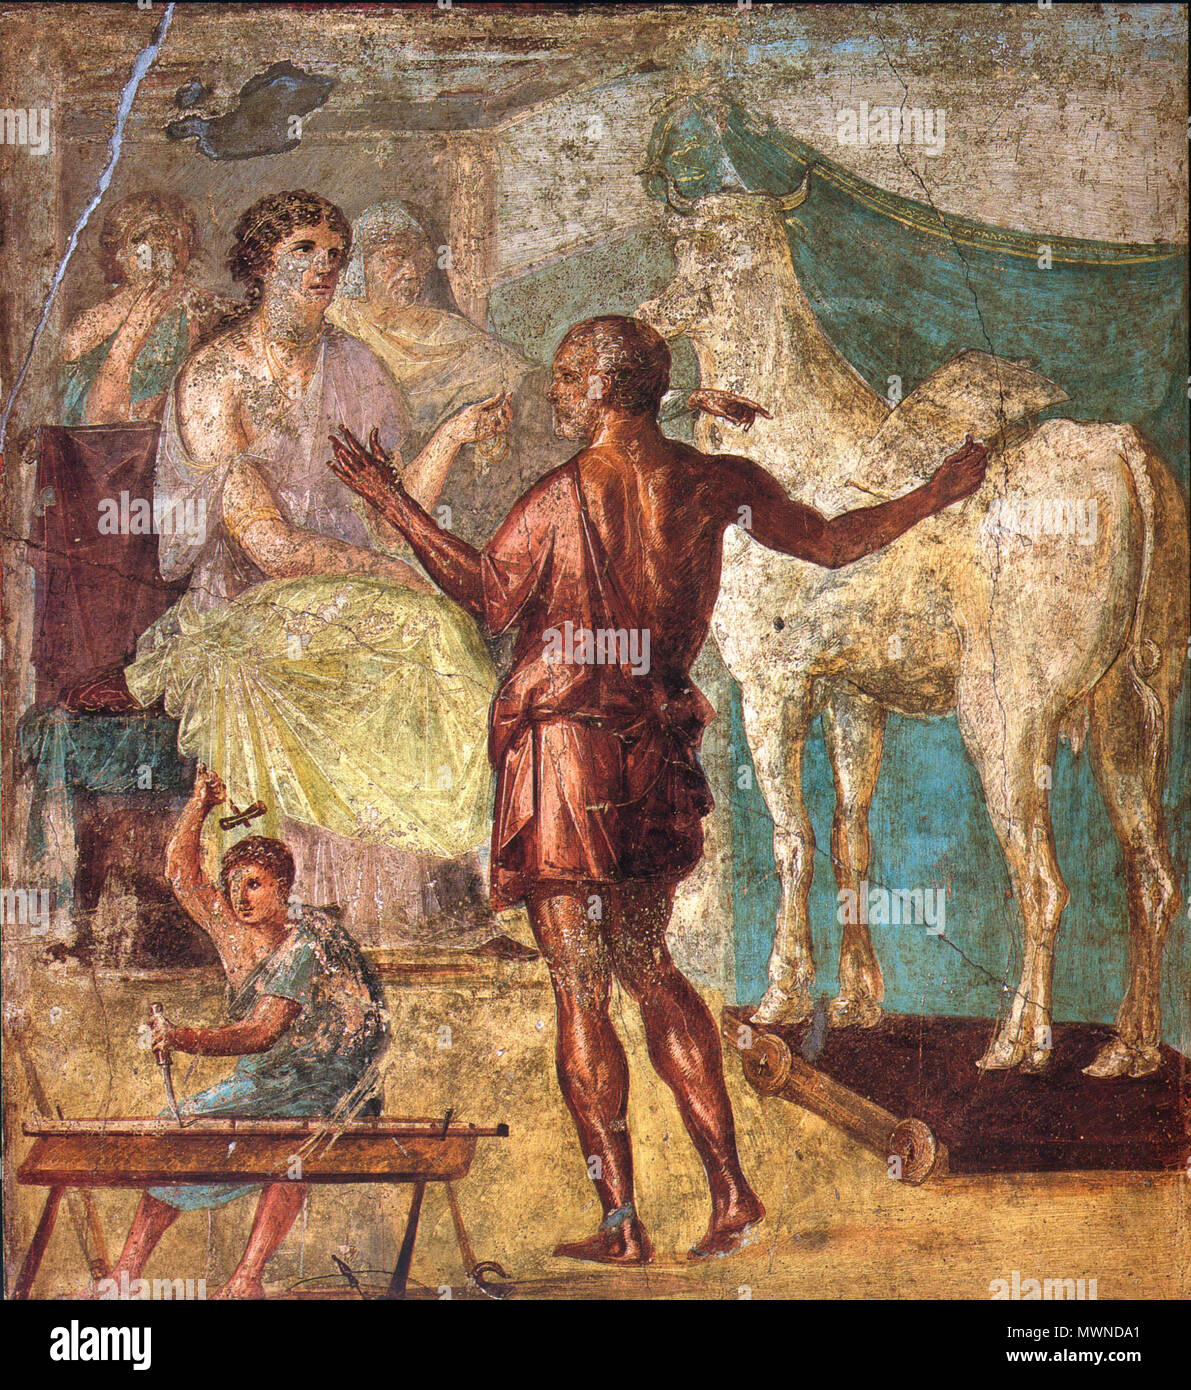 . English: Daedalus, Pasiphae and wooden cow. Roman fresco from the northern wall of the triclinium in the Casa dei Vettii (VI 15,1) in Pompeii. Deutsch: Daedalus übergibt Pasiphae, der Gemahlin des Minos, die hölzerne Kuh. Römisches Fresko von der Nordwand des Tricliniums in der Casa dei Vettii (VI 15,1) in Pompeji. 13 March 2009. WolfgangRieger 492 Pompeii - Casa dei Vettii - Pasiphae Stock Photo